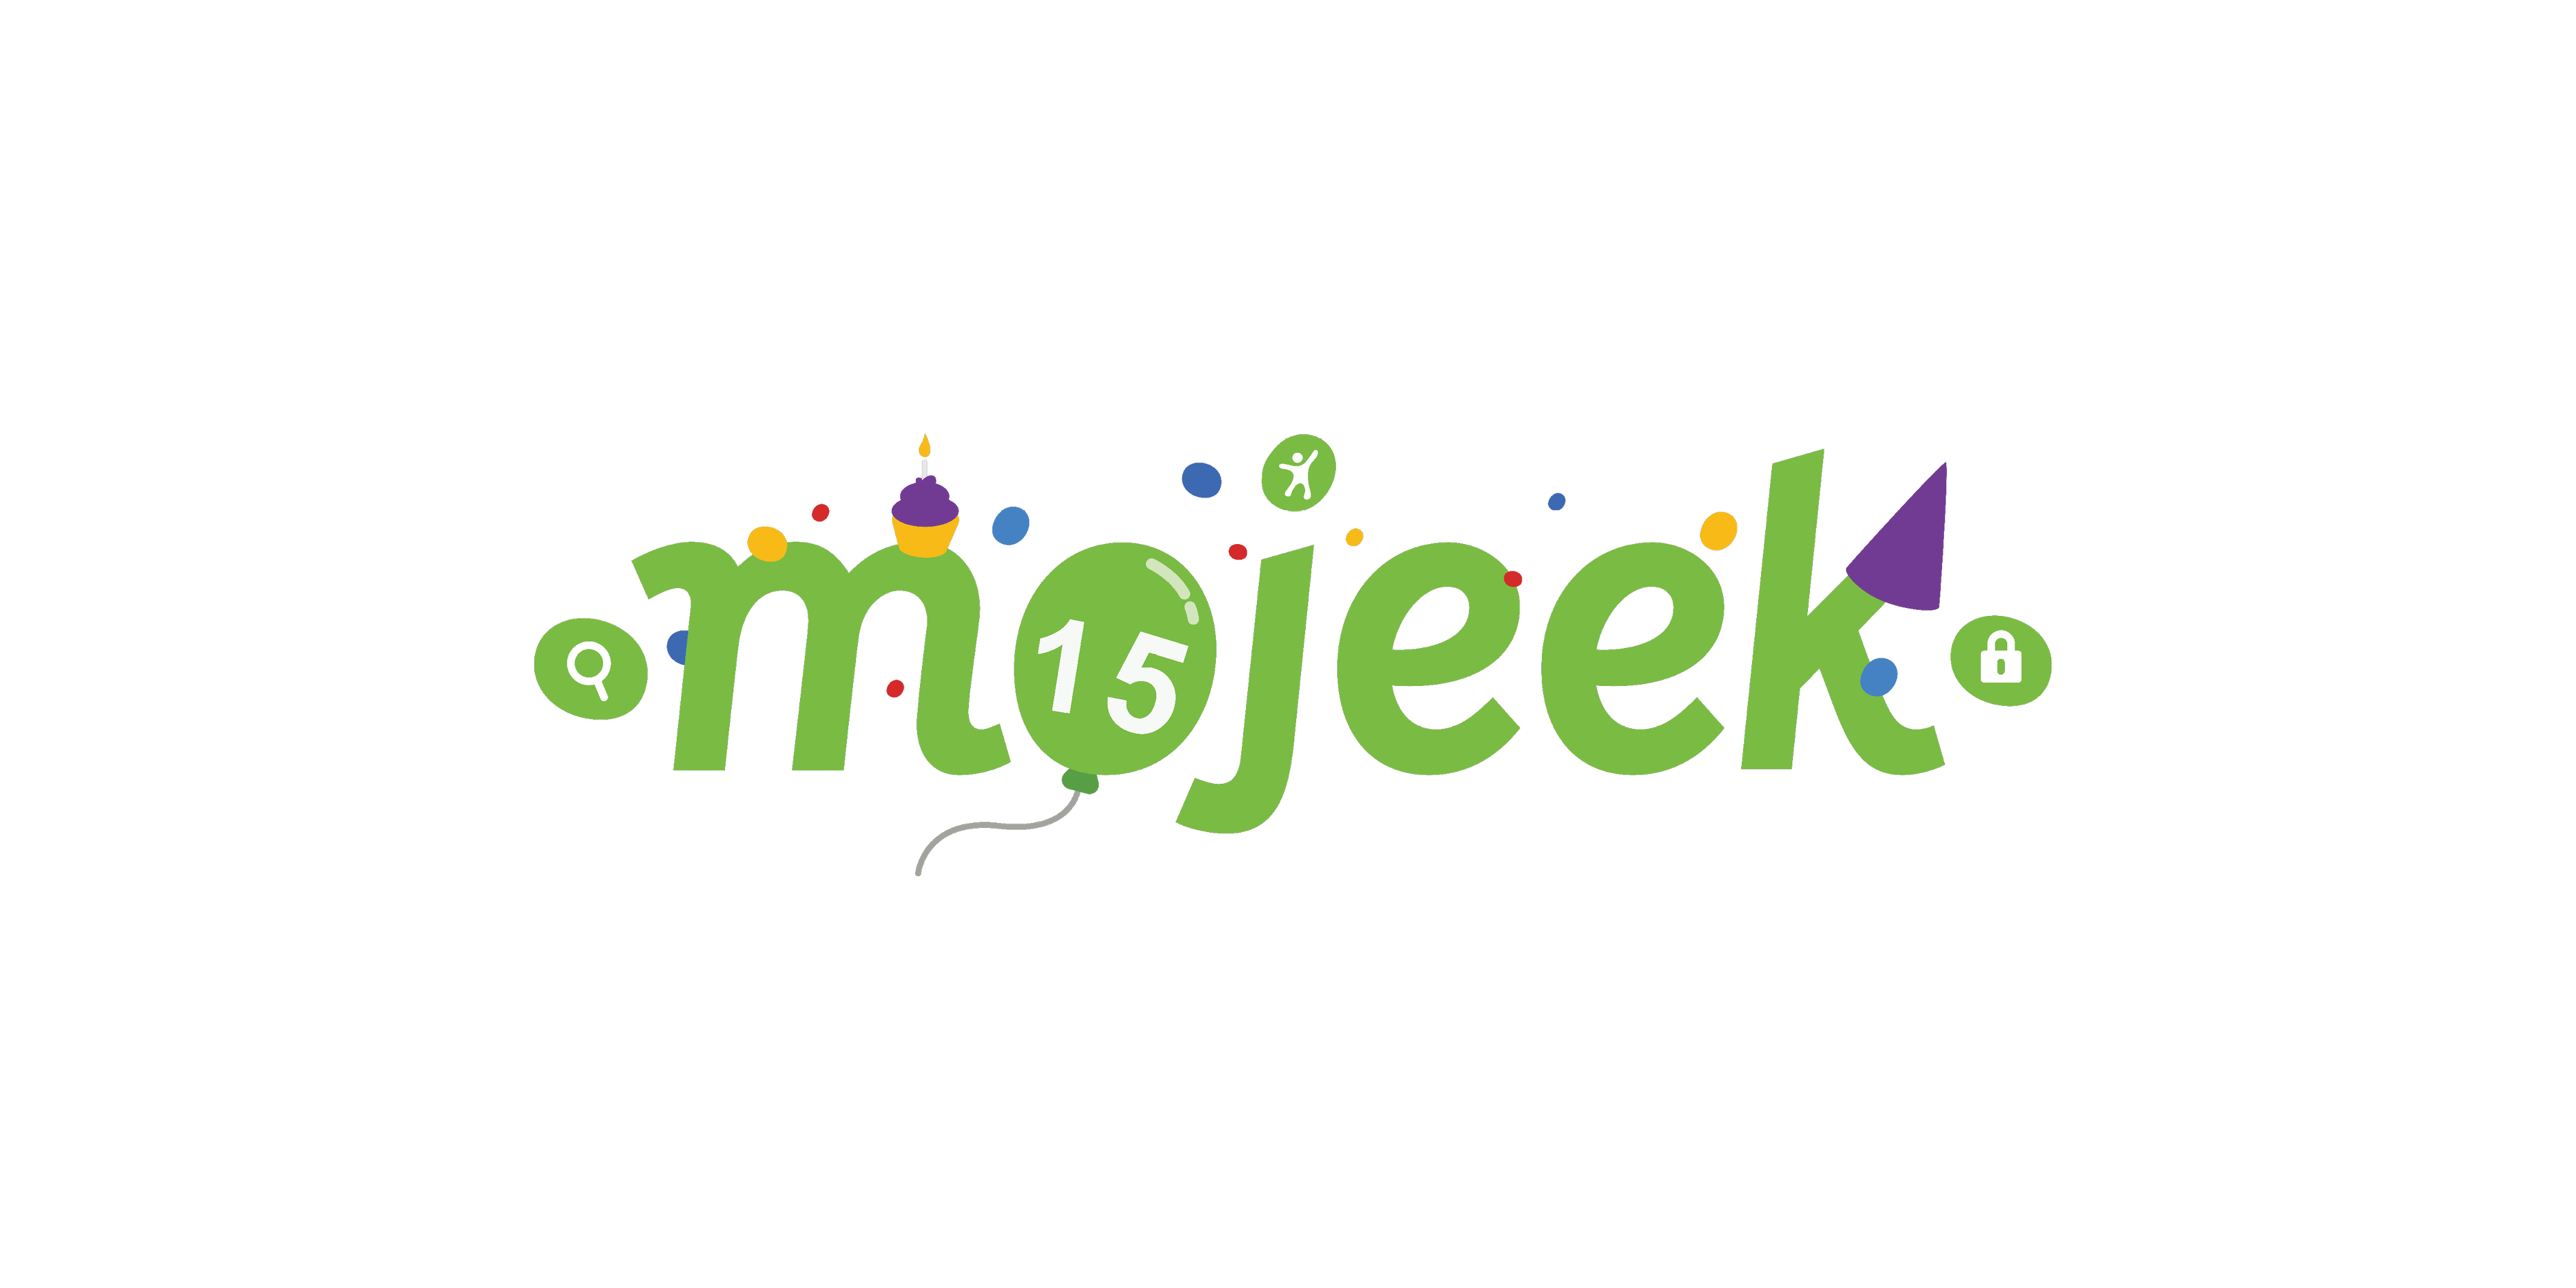 Mojeek celebrates 15 years without tracking